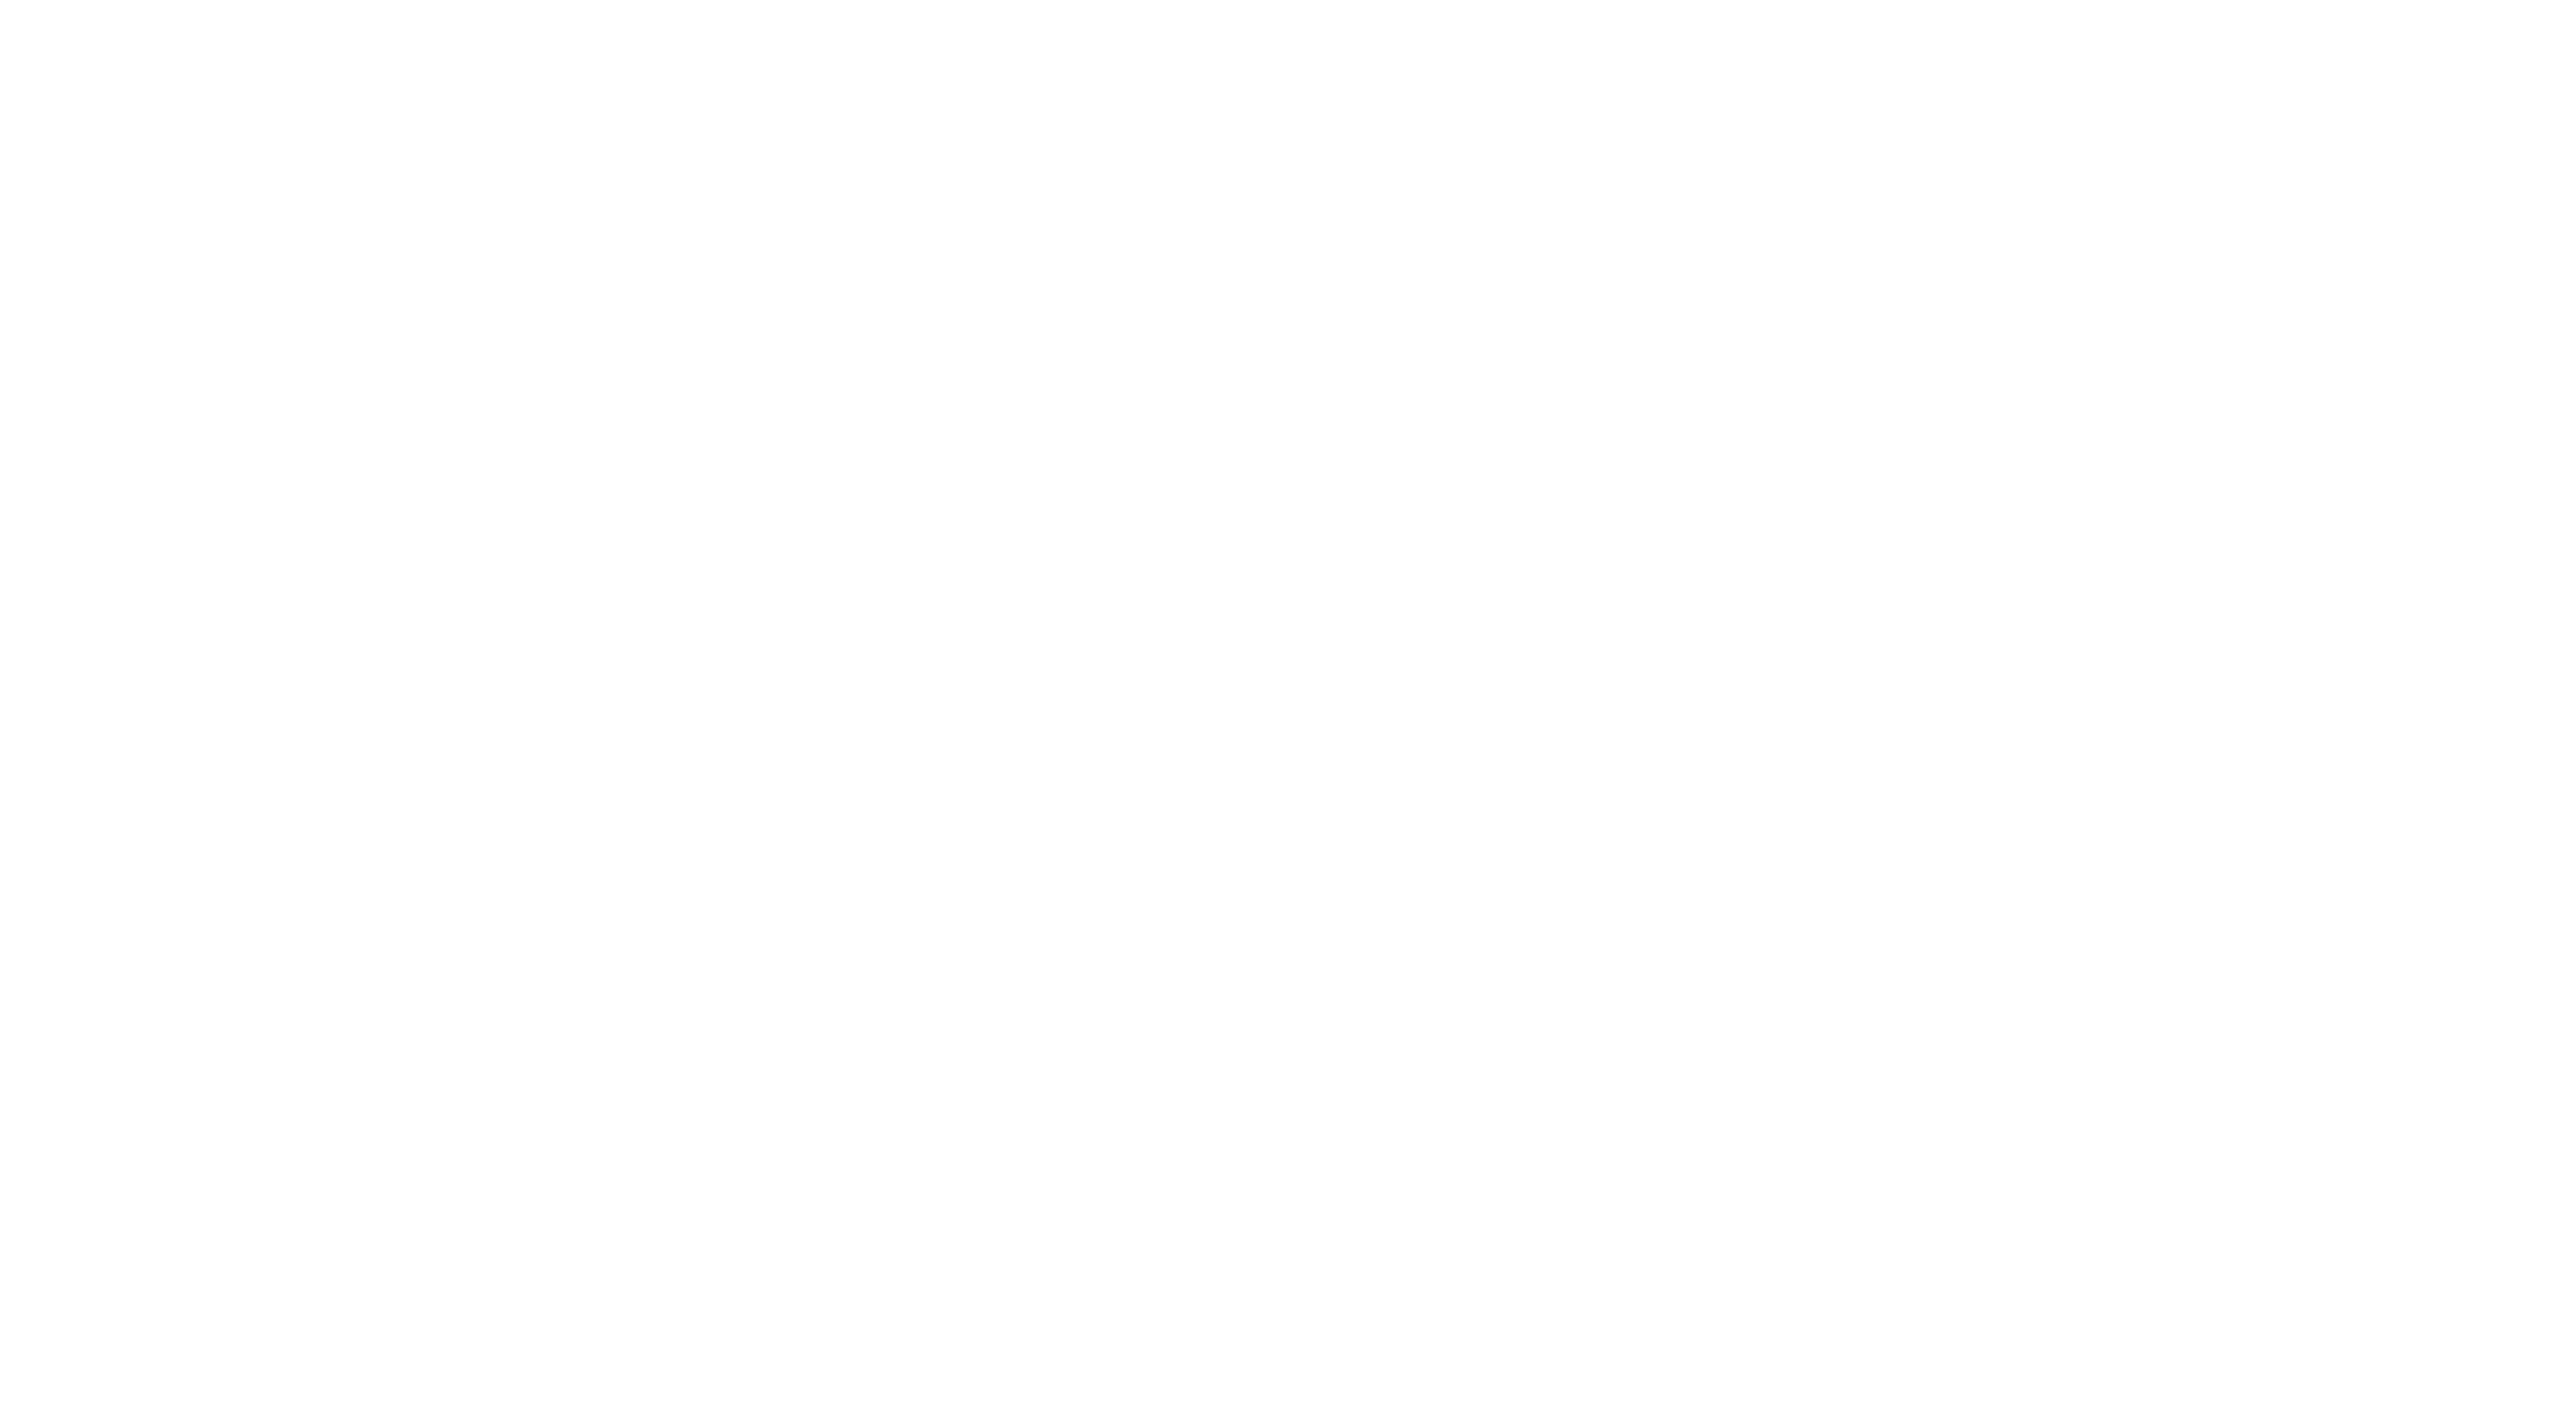 Boxcar Woody Santa Fe